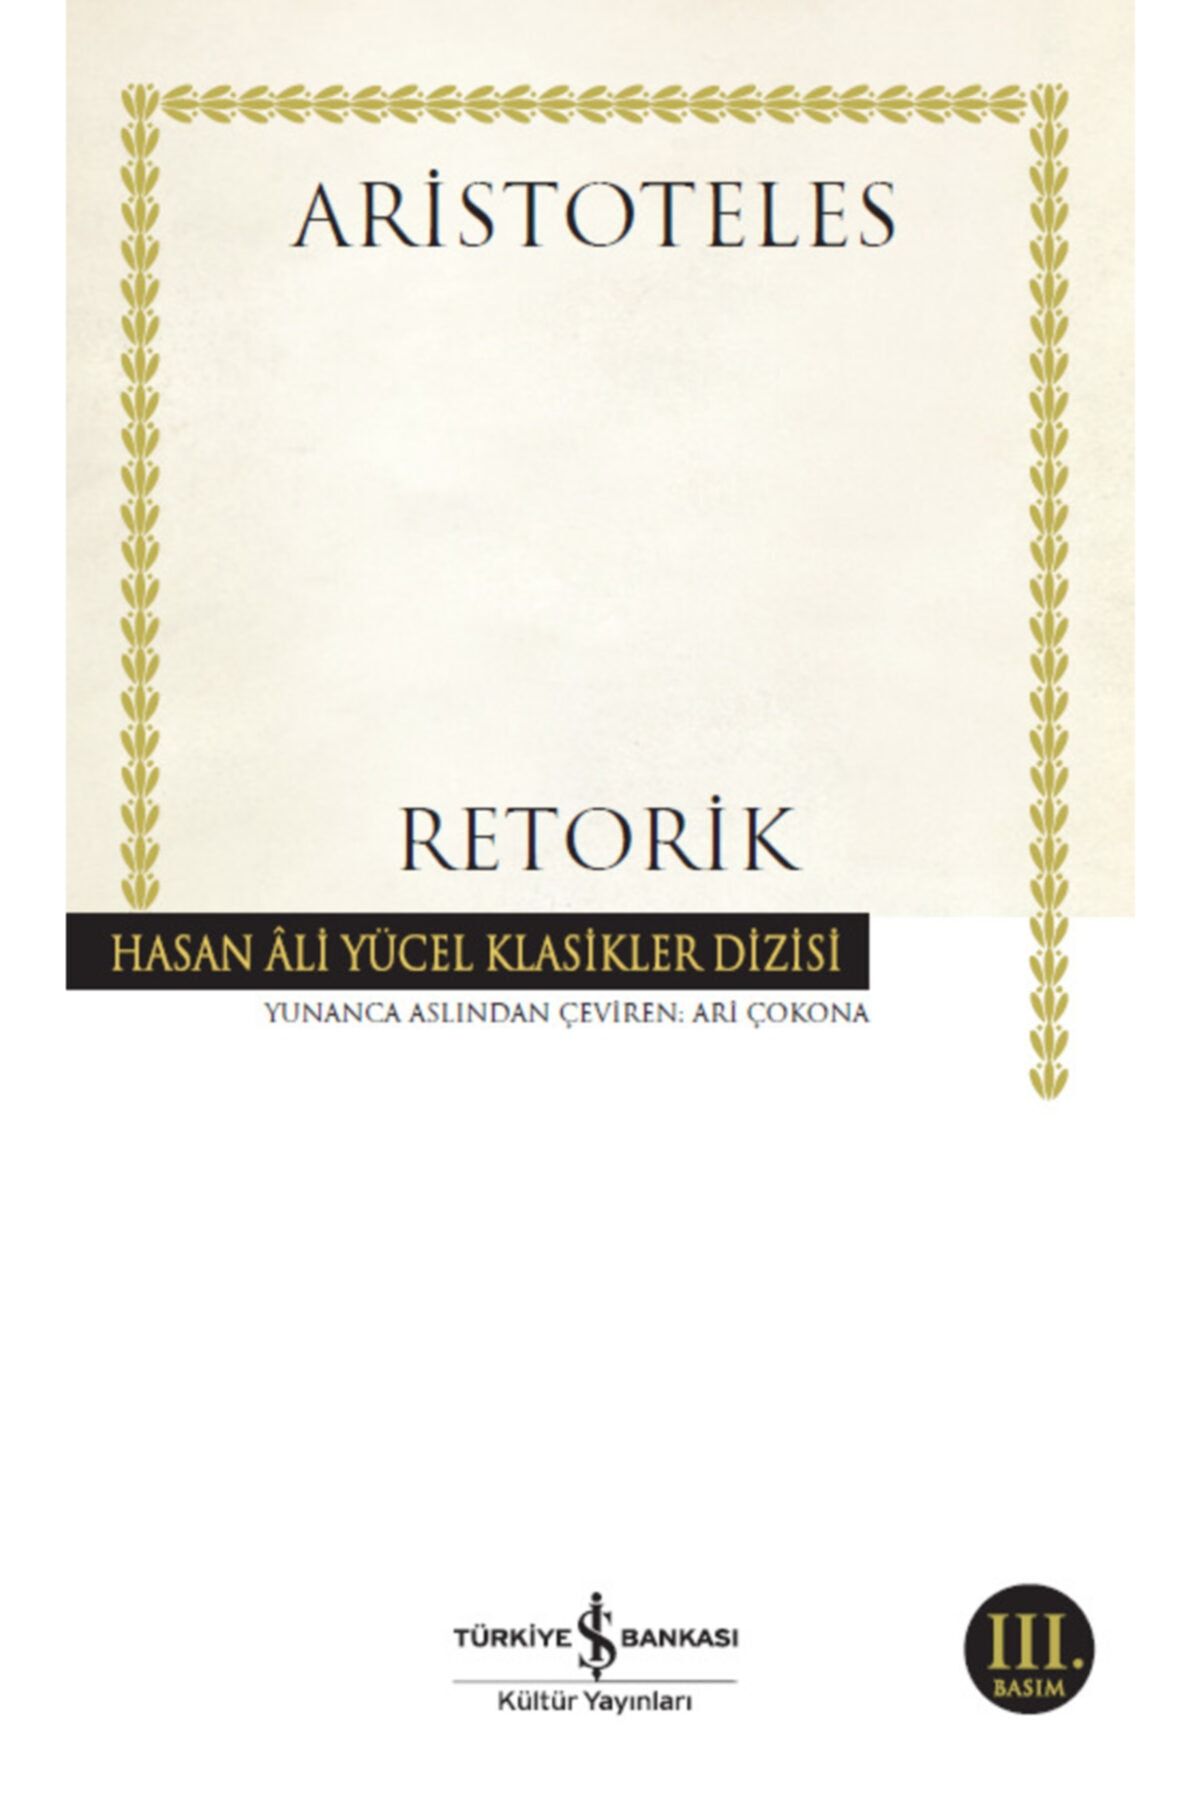 Türkiye İş Bankası Kültür Yayınları Retorik kitabı - Aristoteles - İş Bankası Kültür Yayınları